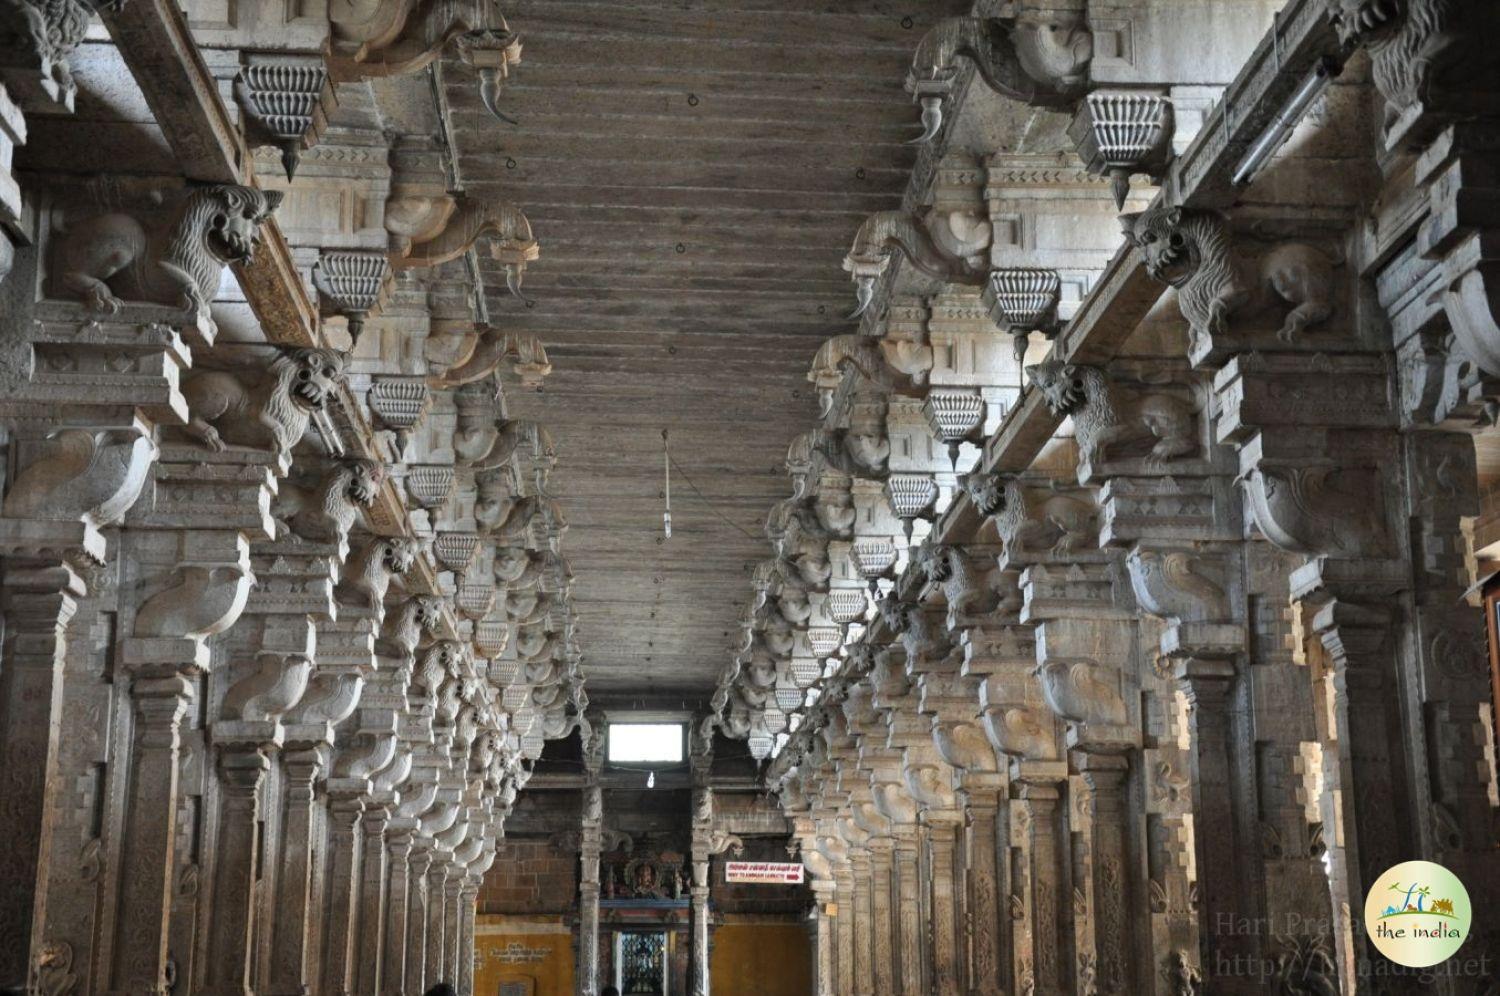 Jambukeswarar Temple